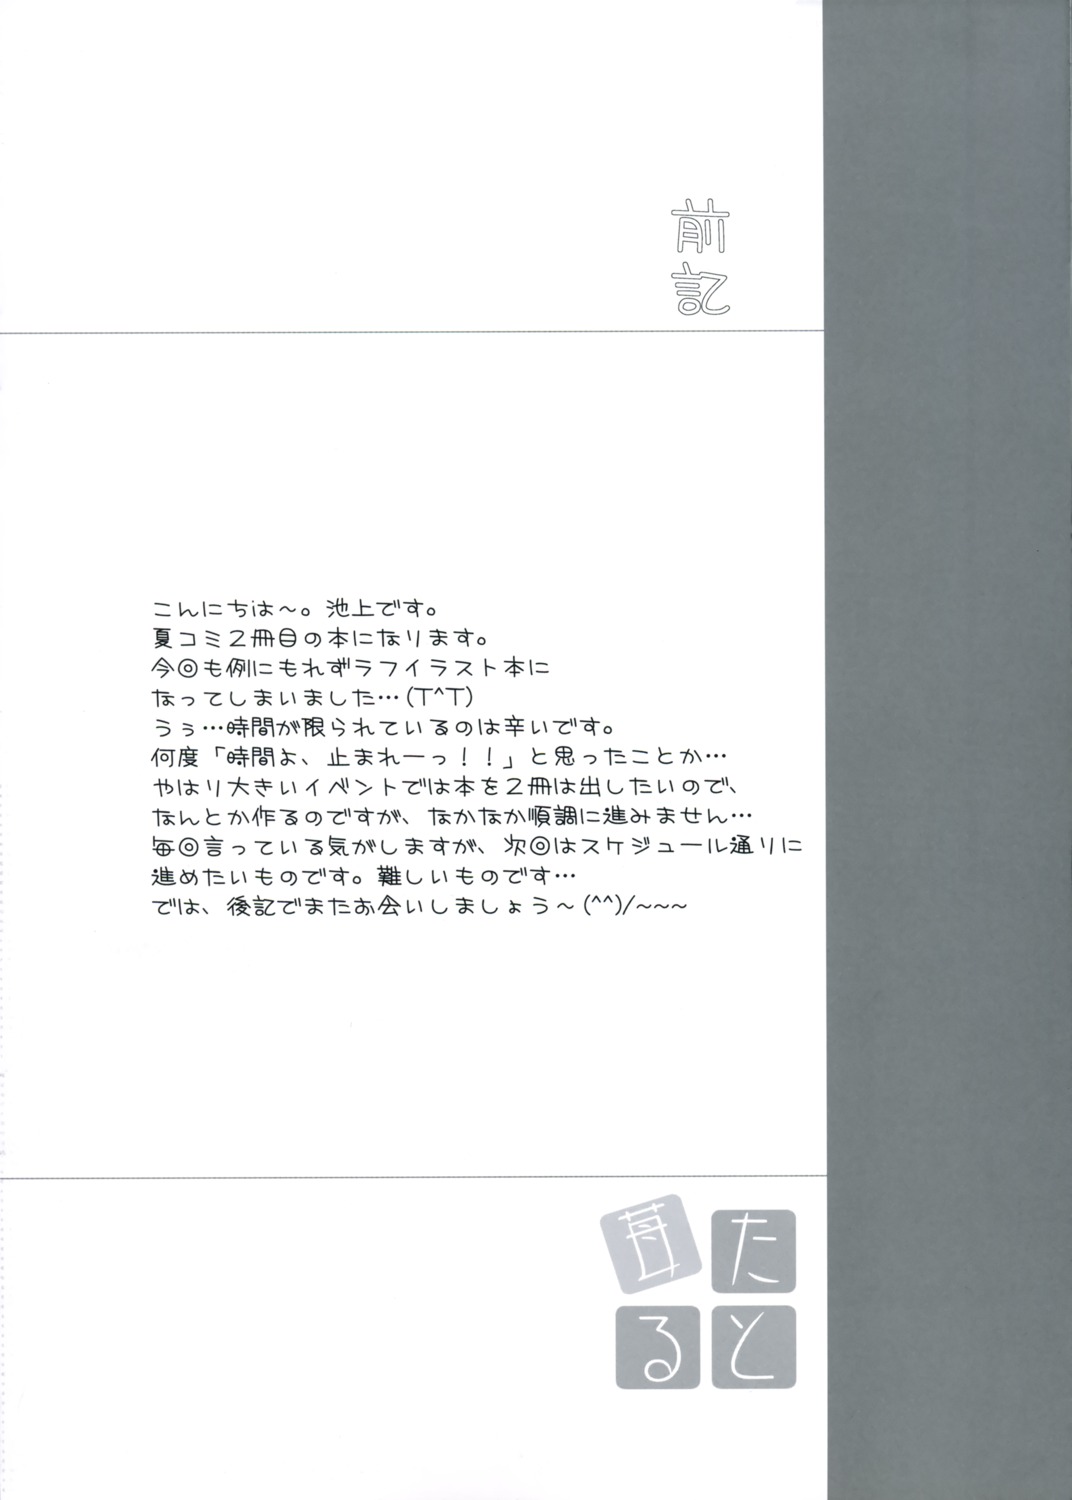 ikegami_akane monochrome text